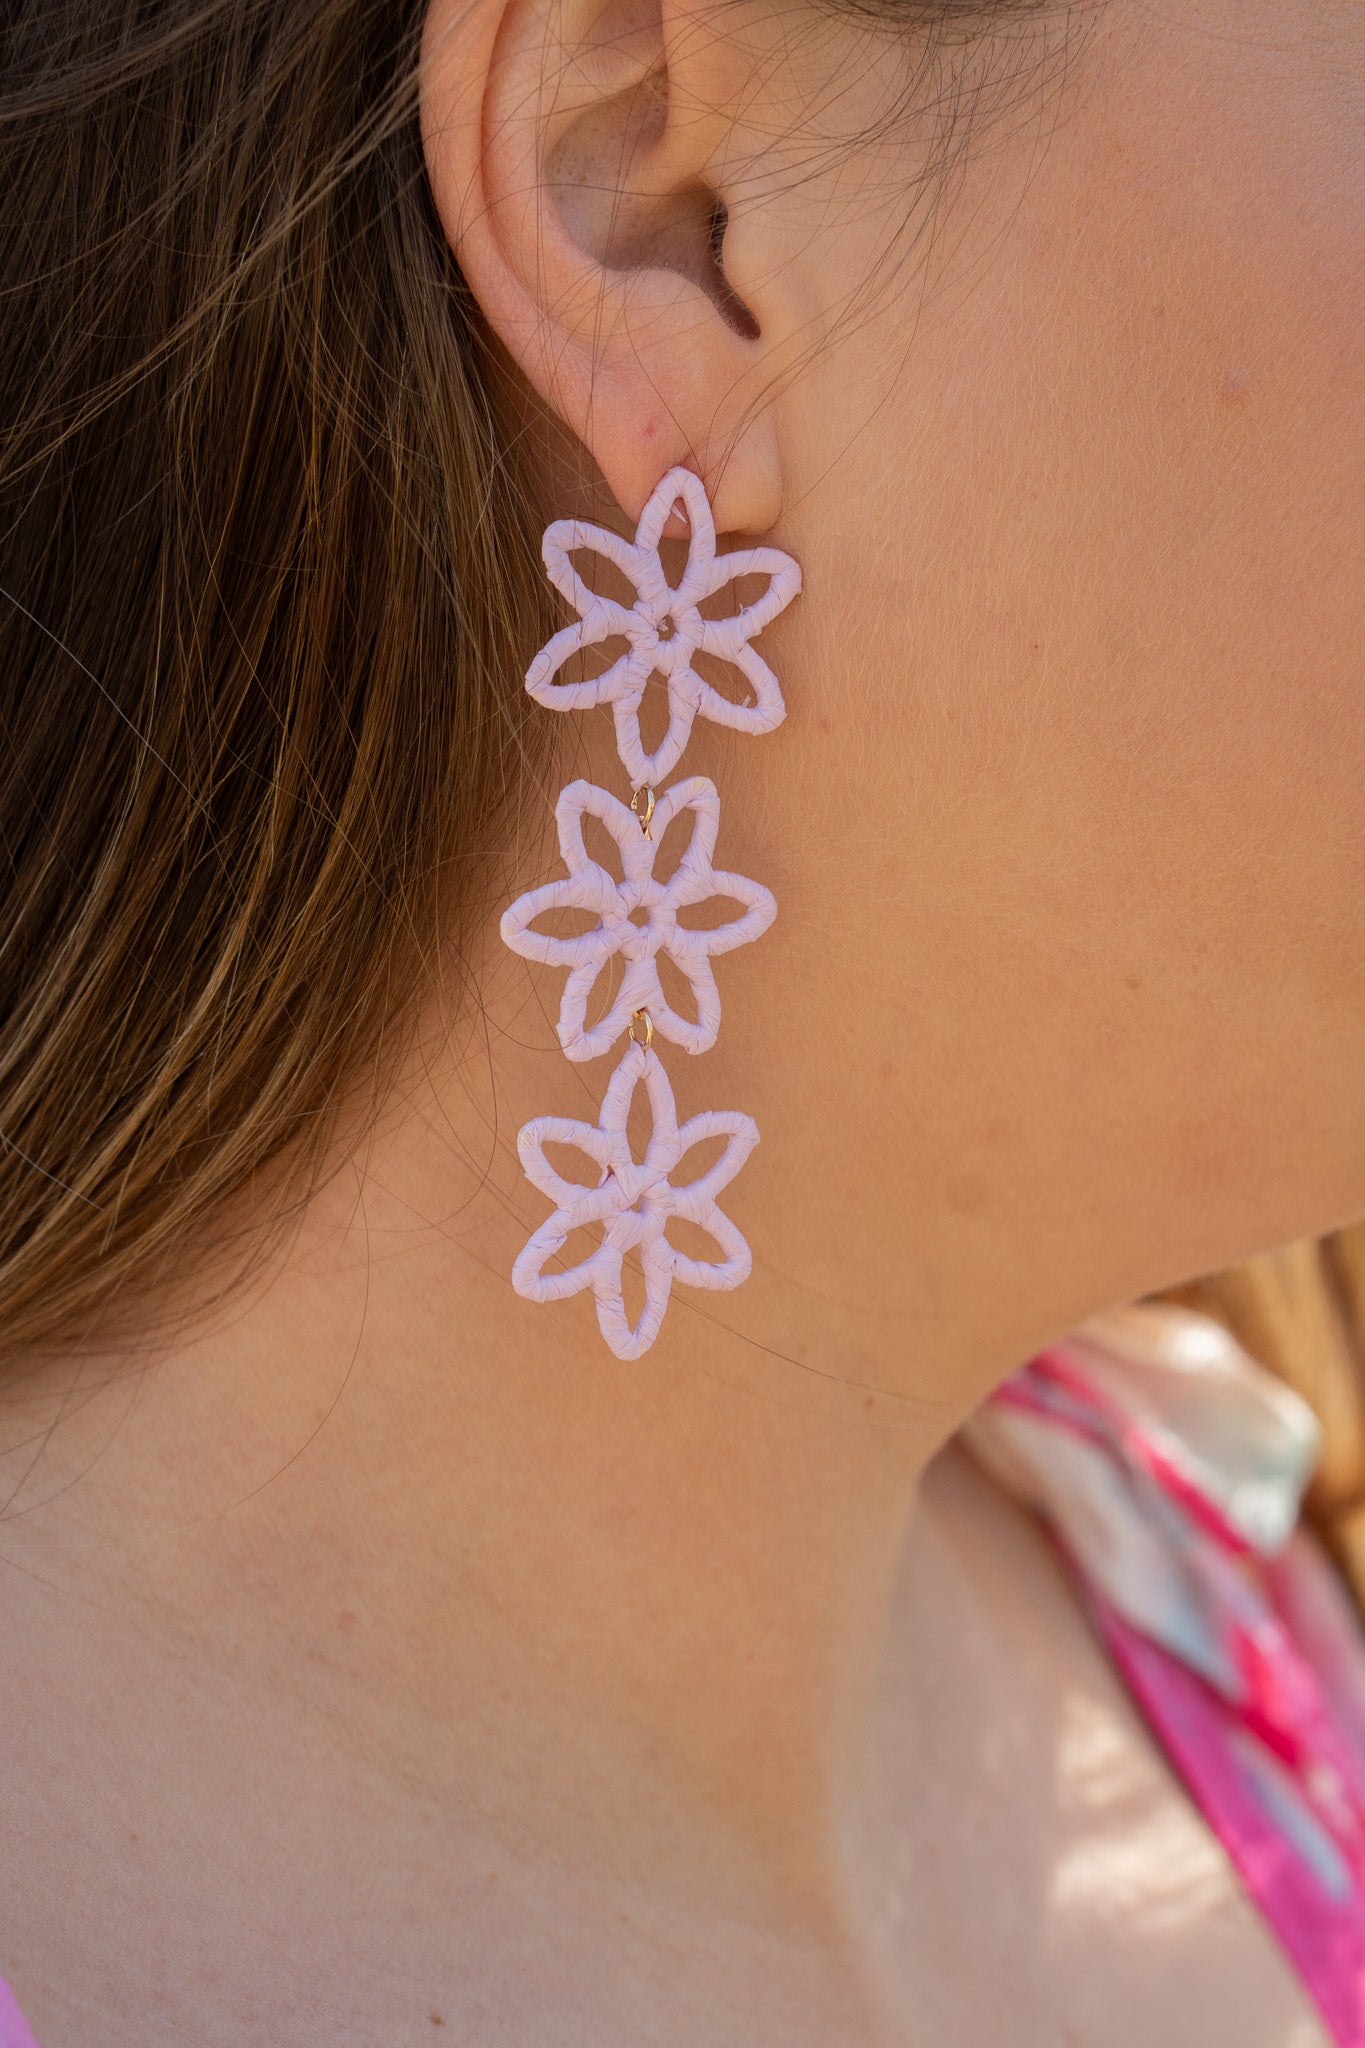 3 flowers earrings